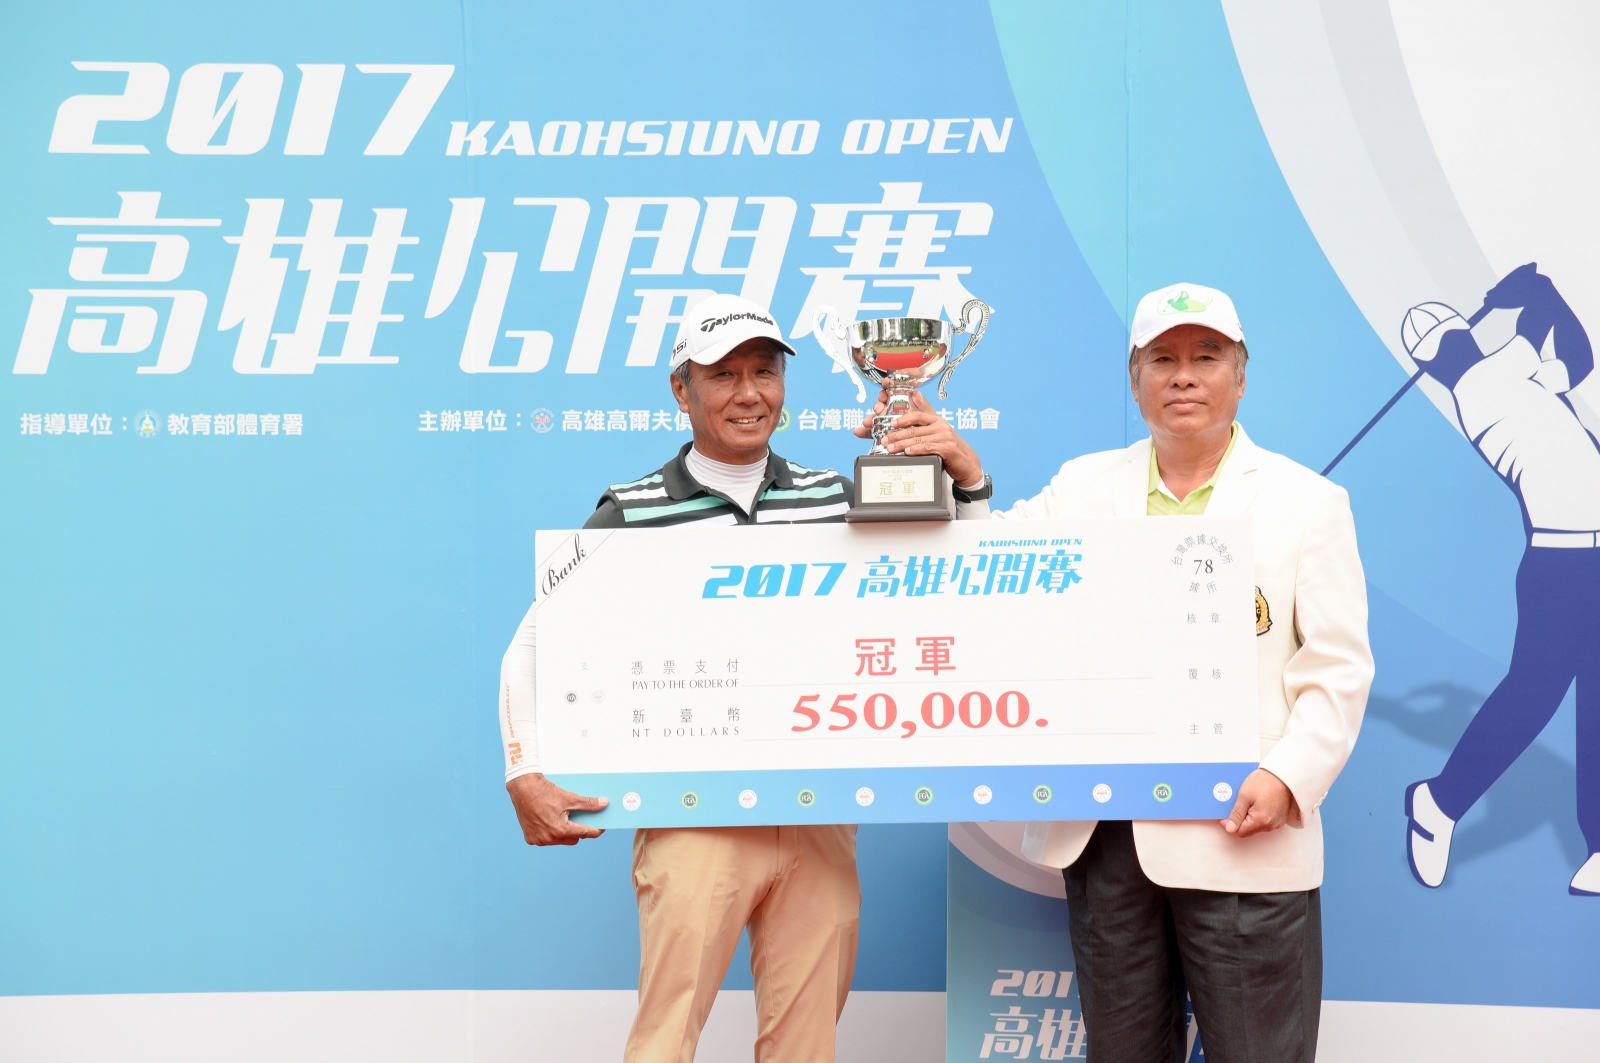 呂文德(左)衛冕高雄公開賽冠軍，由高雄高爾夫球場理事長張德雄頒發獎盃及獎金。